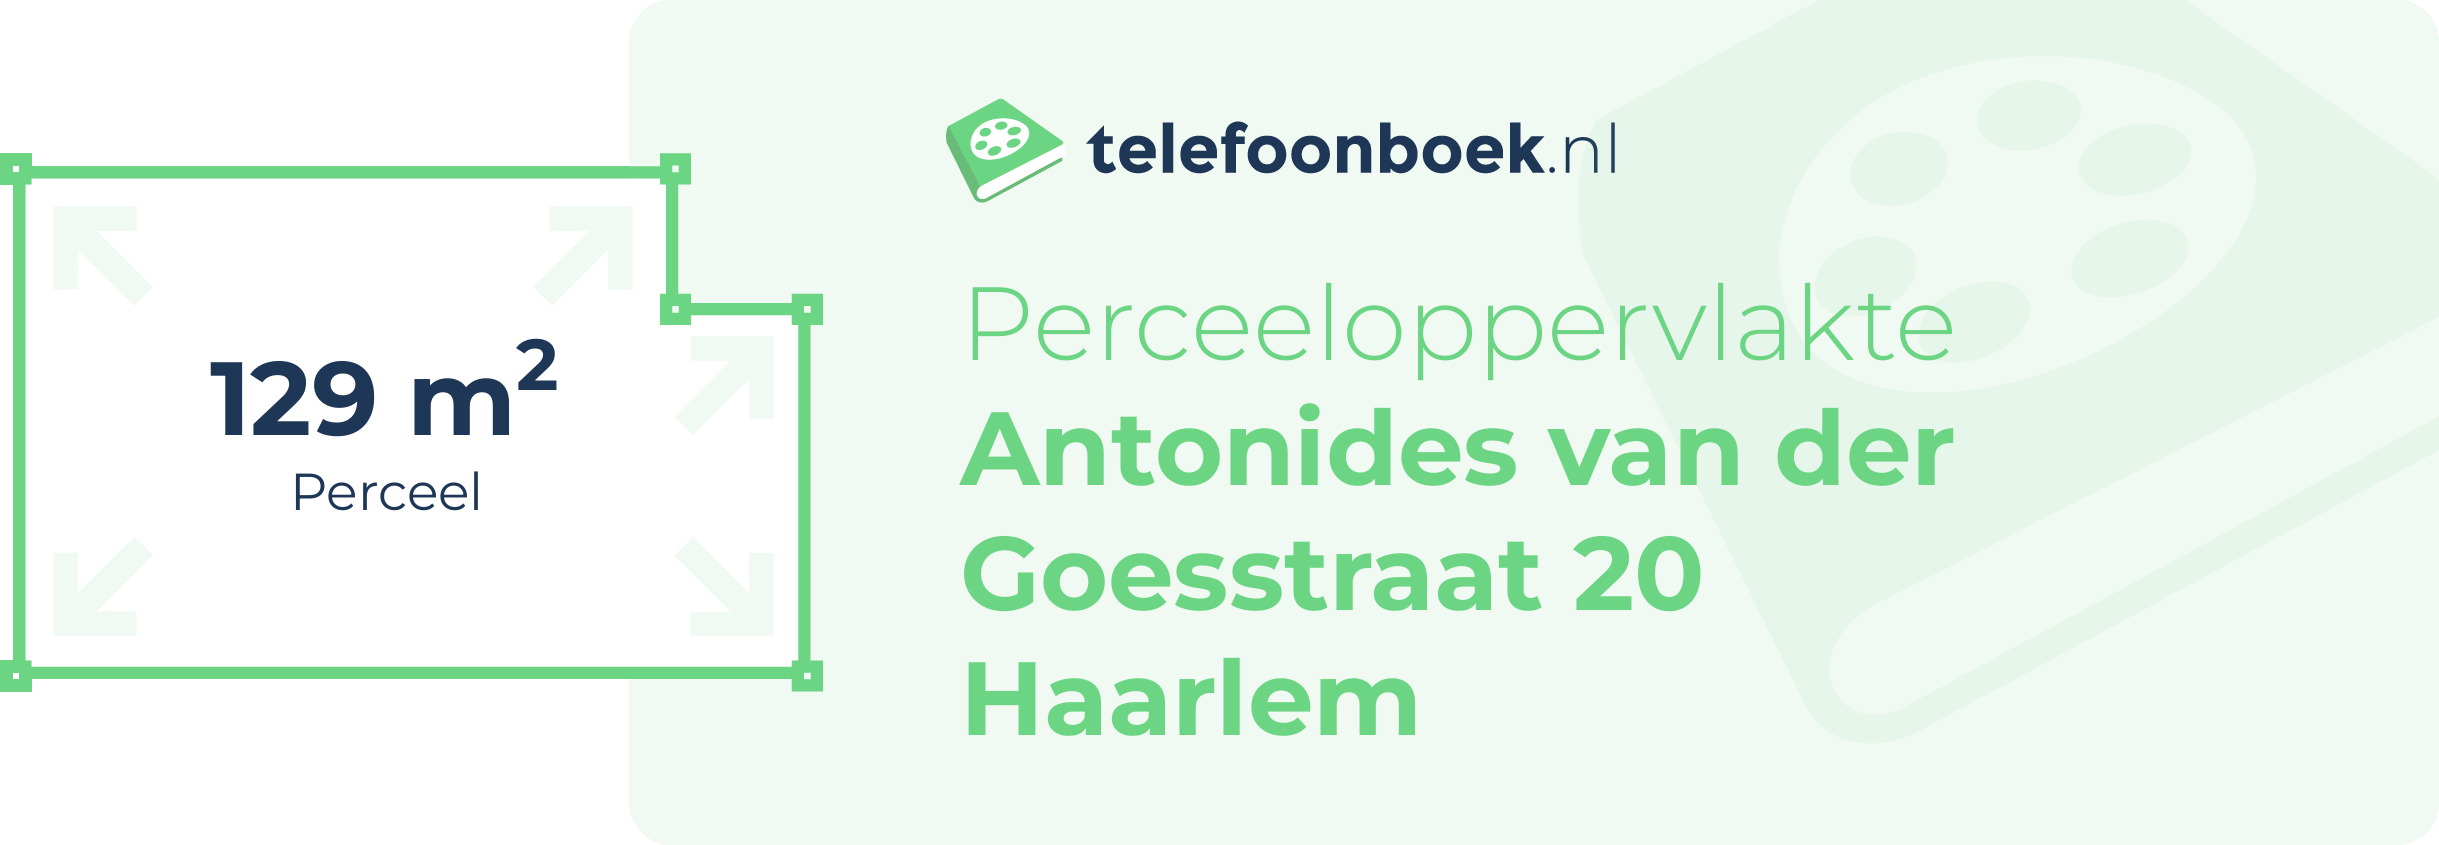 Perceeloppervlakte Antonides Van Der Goesstraat 20 Haarlem